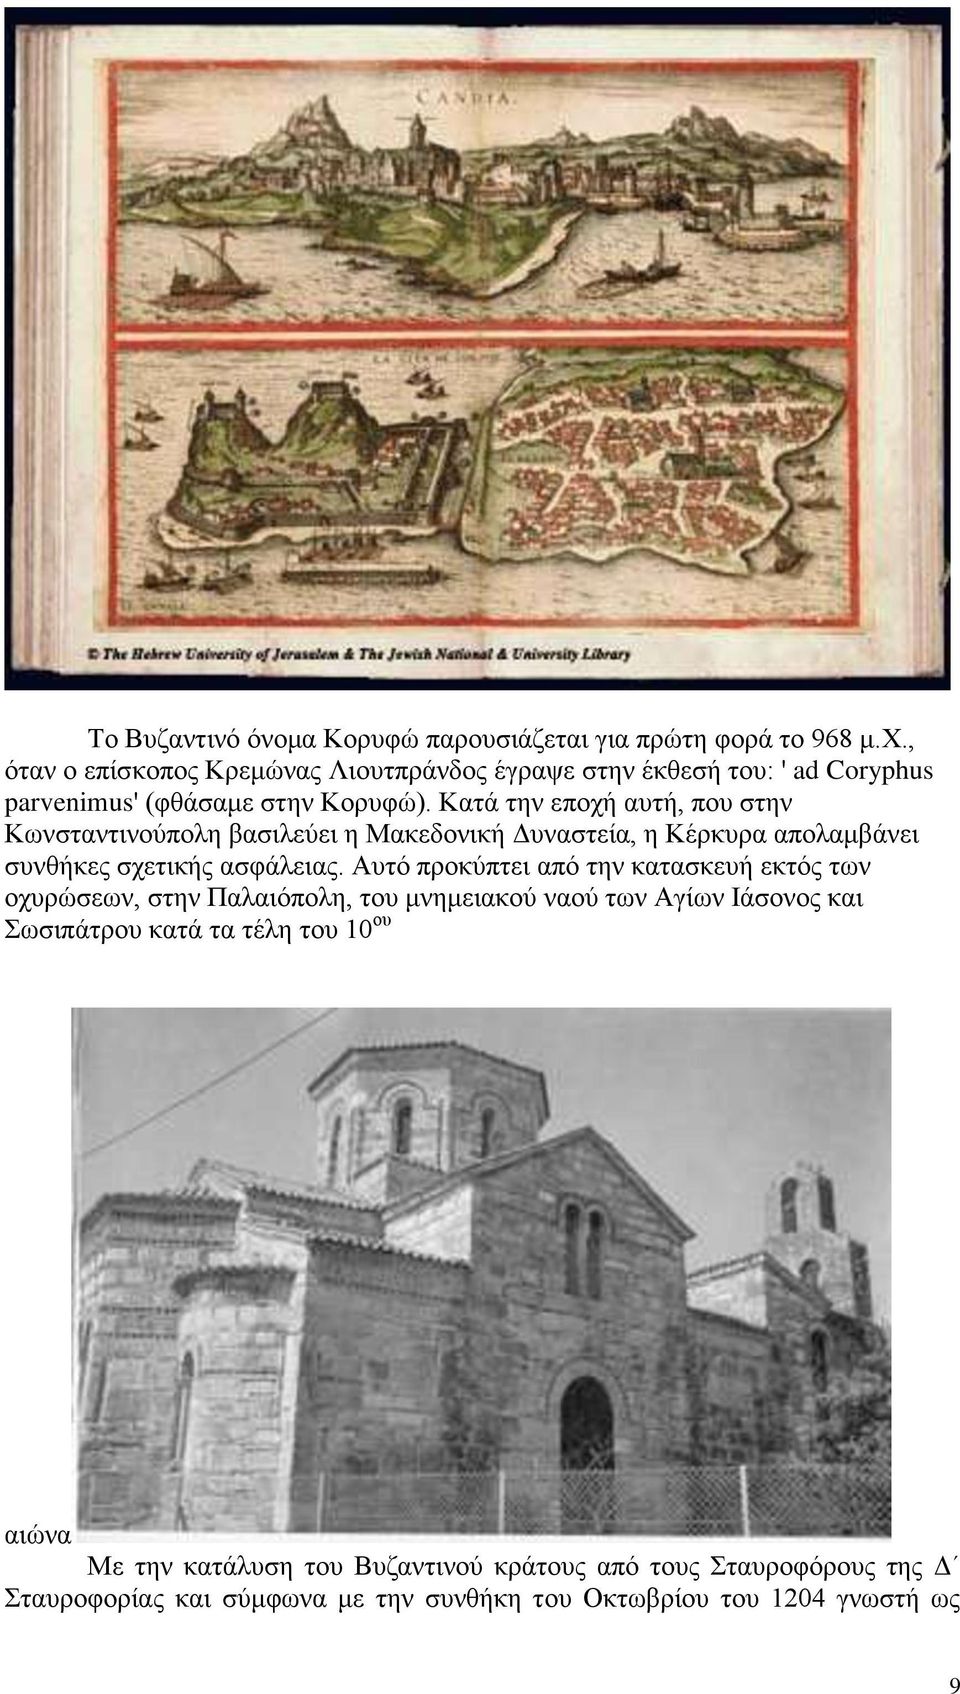 Κατά την εποχή αυτή, που στην Κωνσταντινούπολη βασιλεύει η Μακεδονική Δυναστεία, η Κέρκυρα απολαμβάνει συνθήκες σχετικής ασφάλειας.